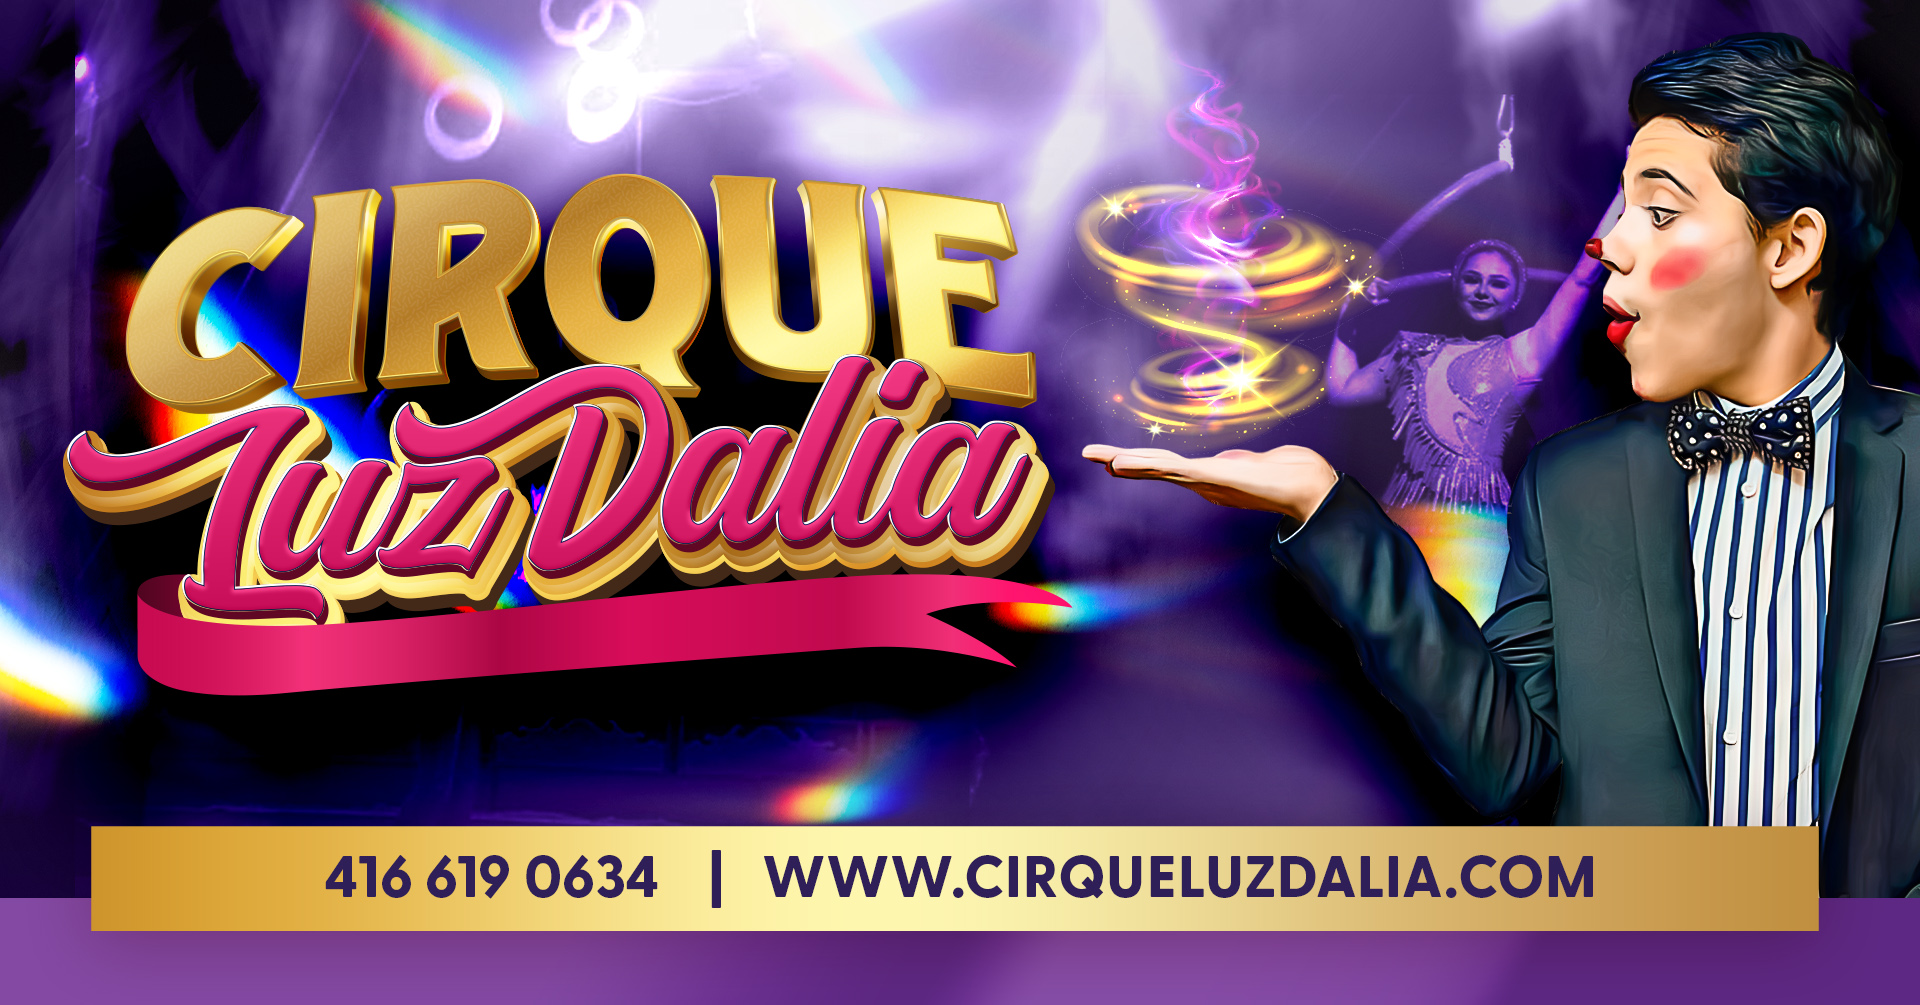 Home | Cirque LuzDalia is coming to a building near you!